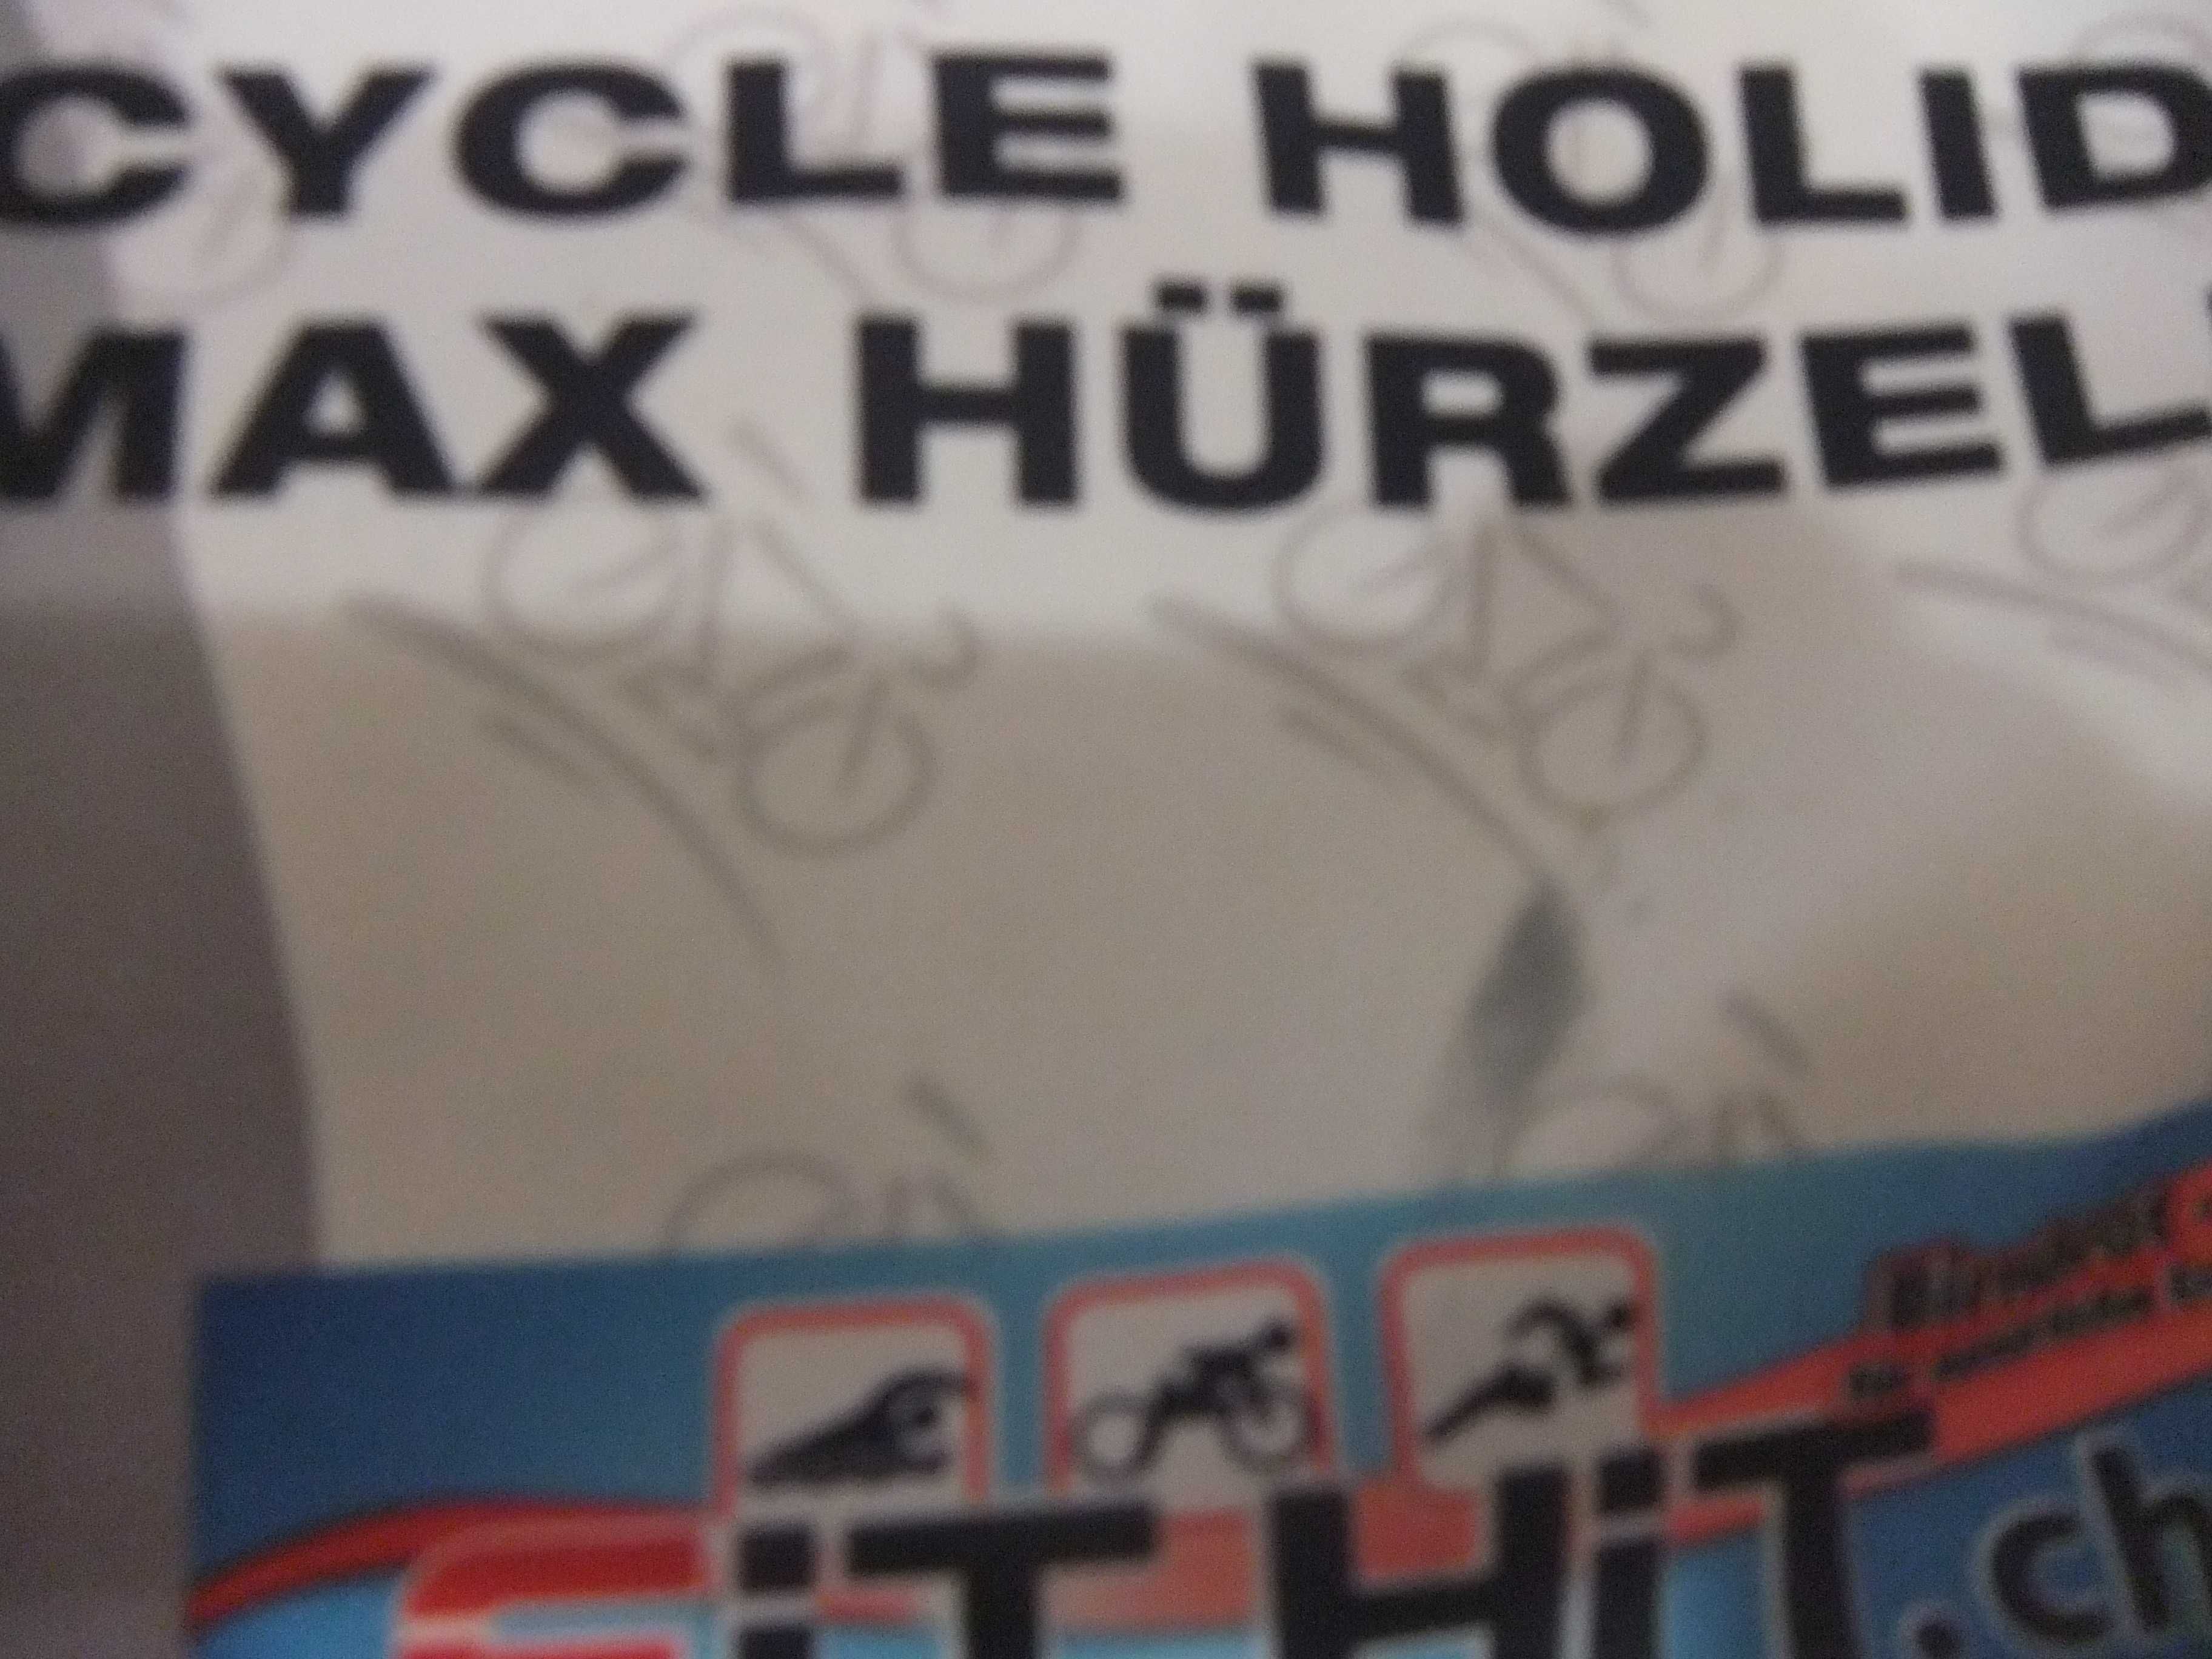 Kurtka-Bluza-Rower-Szosa-Kolarzówka Bicykle Holidays Max hurzeler M